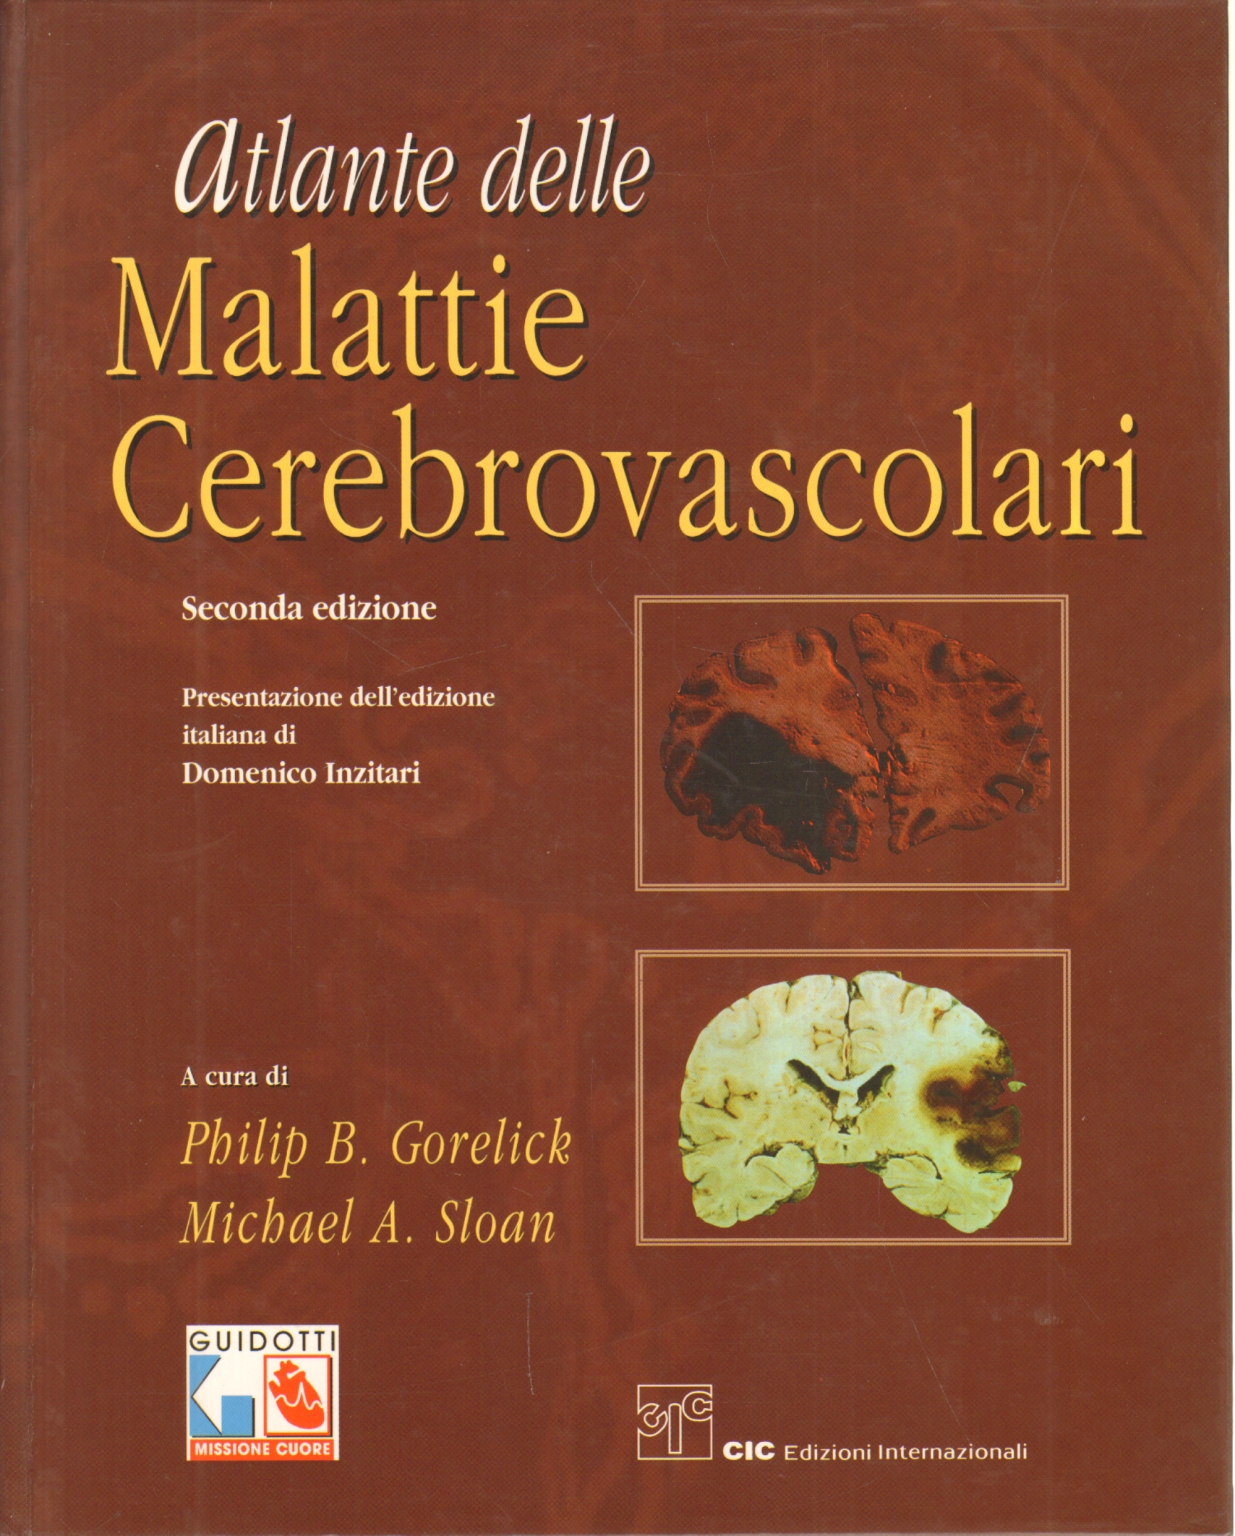 Atlas de la maladie cérébro-vasculaire, Philip B. Gorelick et Michael A. Sloan